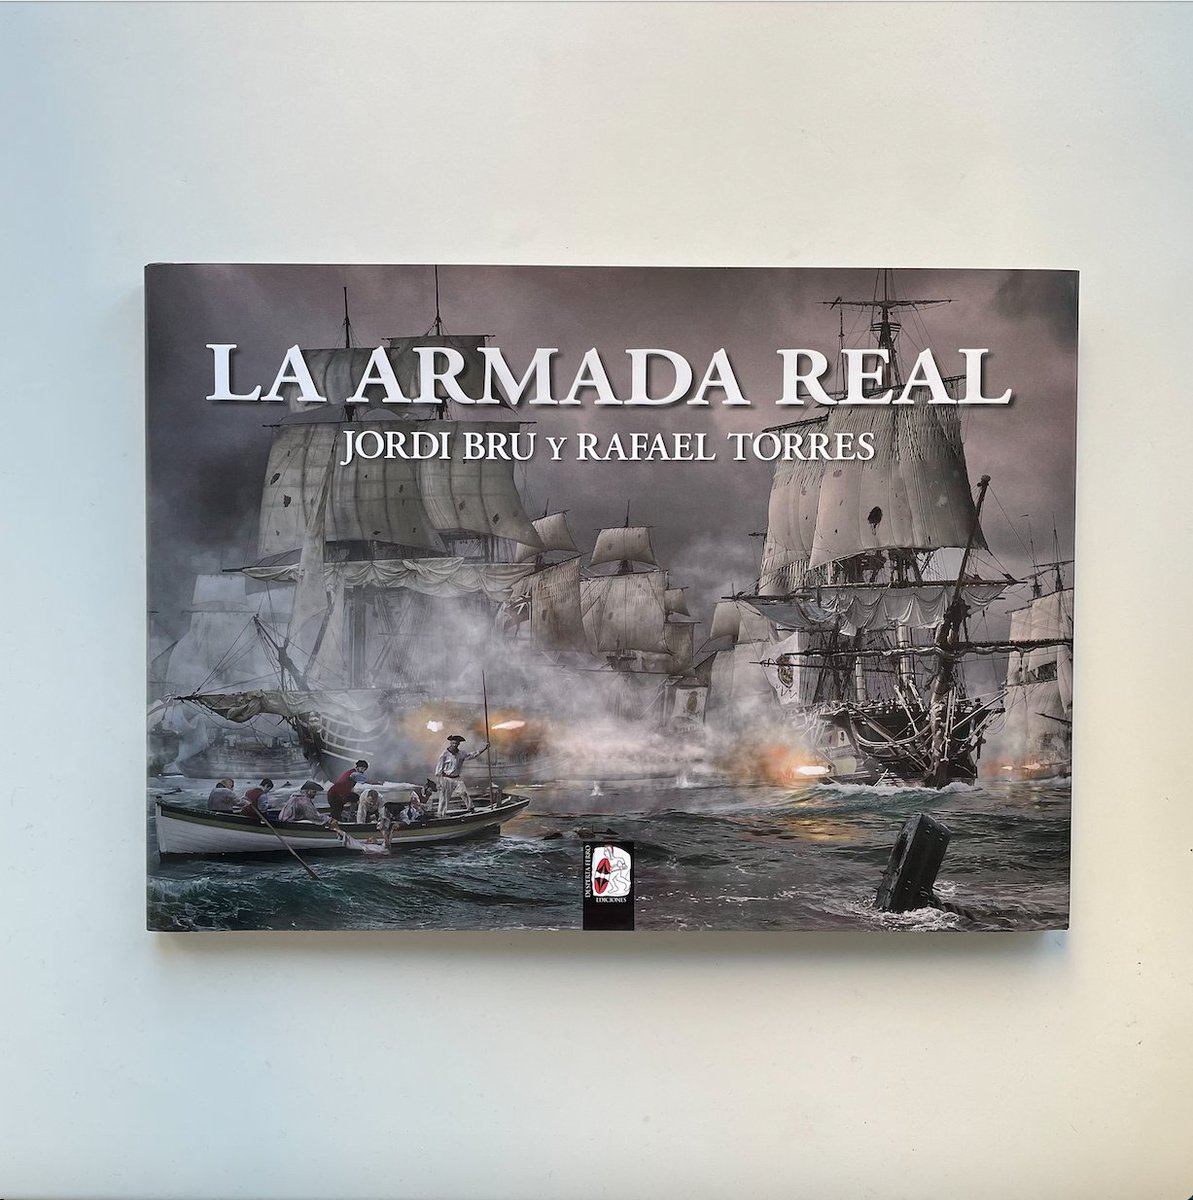 Te dejo la reseña que he publicado en Cuadrados de Historia sobre el ESPECTACULAR libro de Desperta Ferro (@DespertaFerro): ‘La Armada Real’👉 instagram.com/p/C6x9FaUNvOm/… / #historia #historiamilitar #cultura #arte #fotografía #armada #historiadeespaña #españa #despertaferro #libro